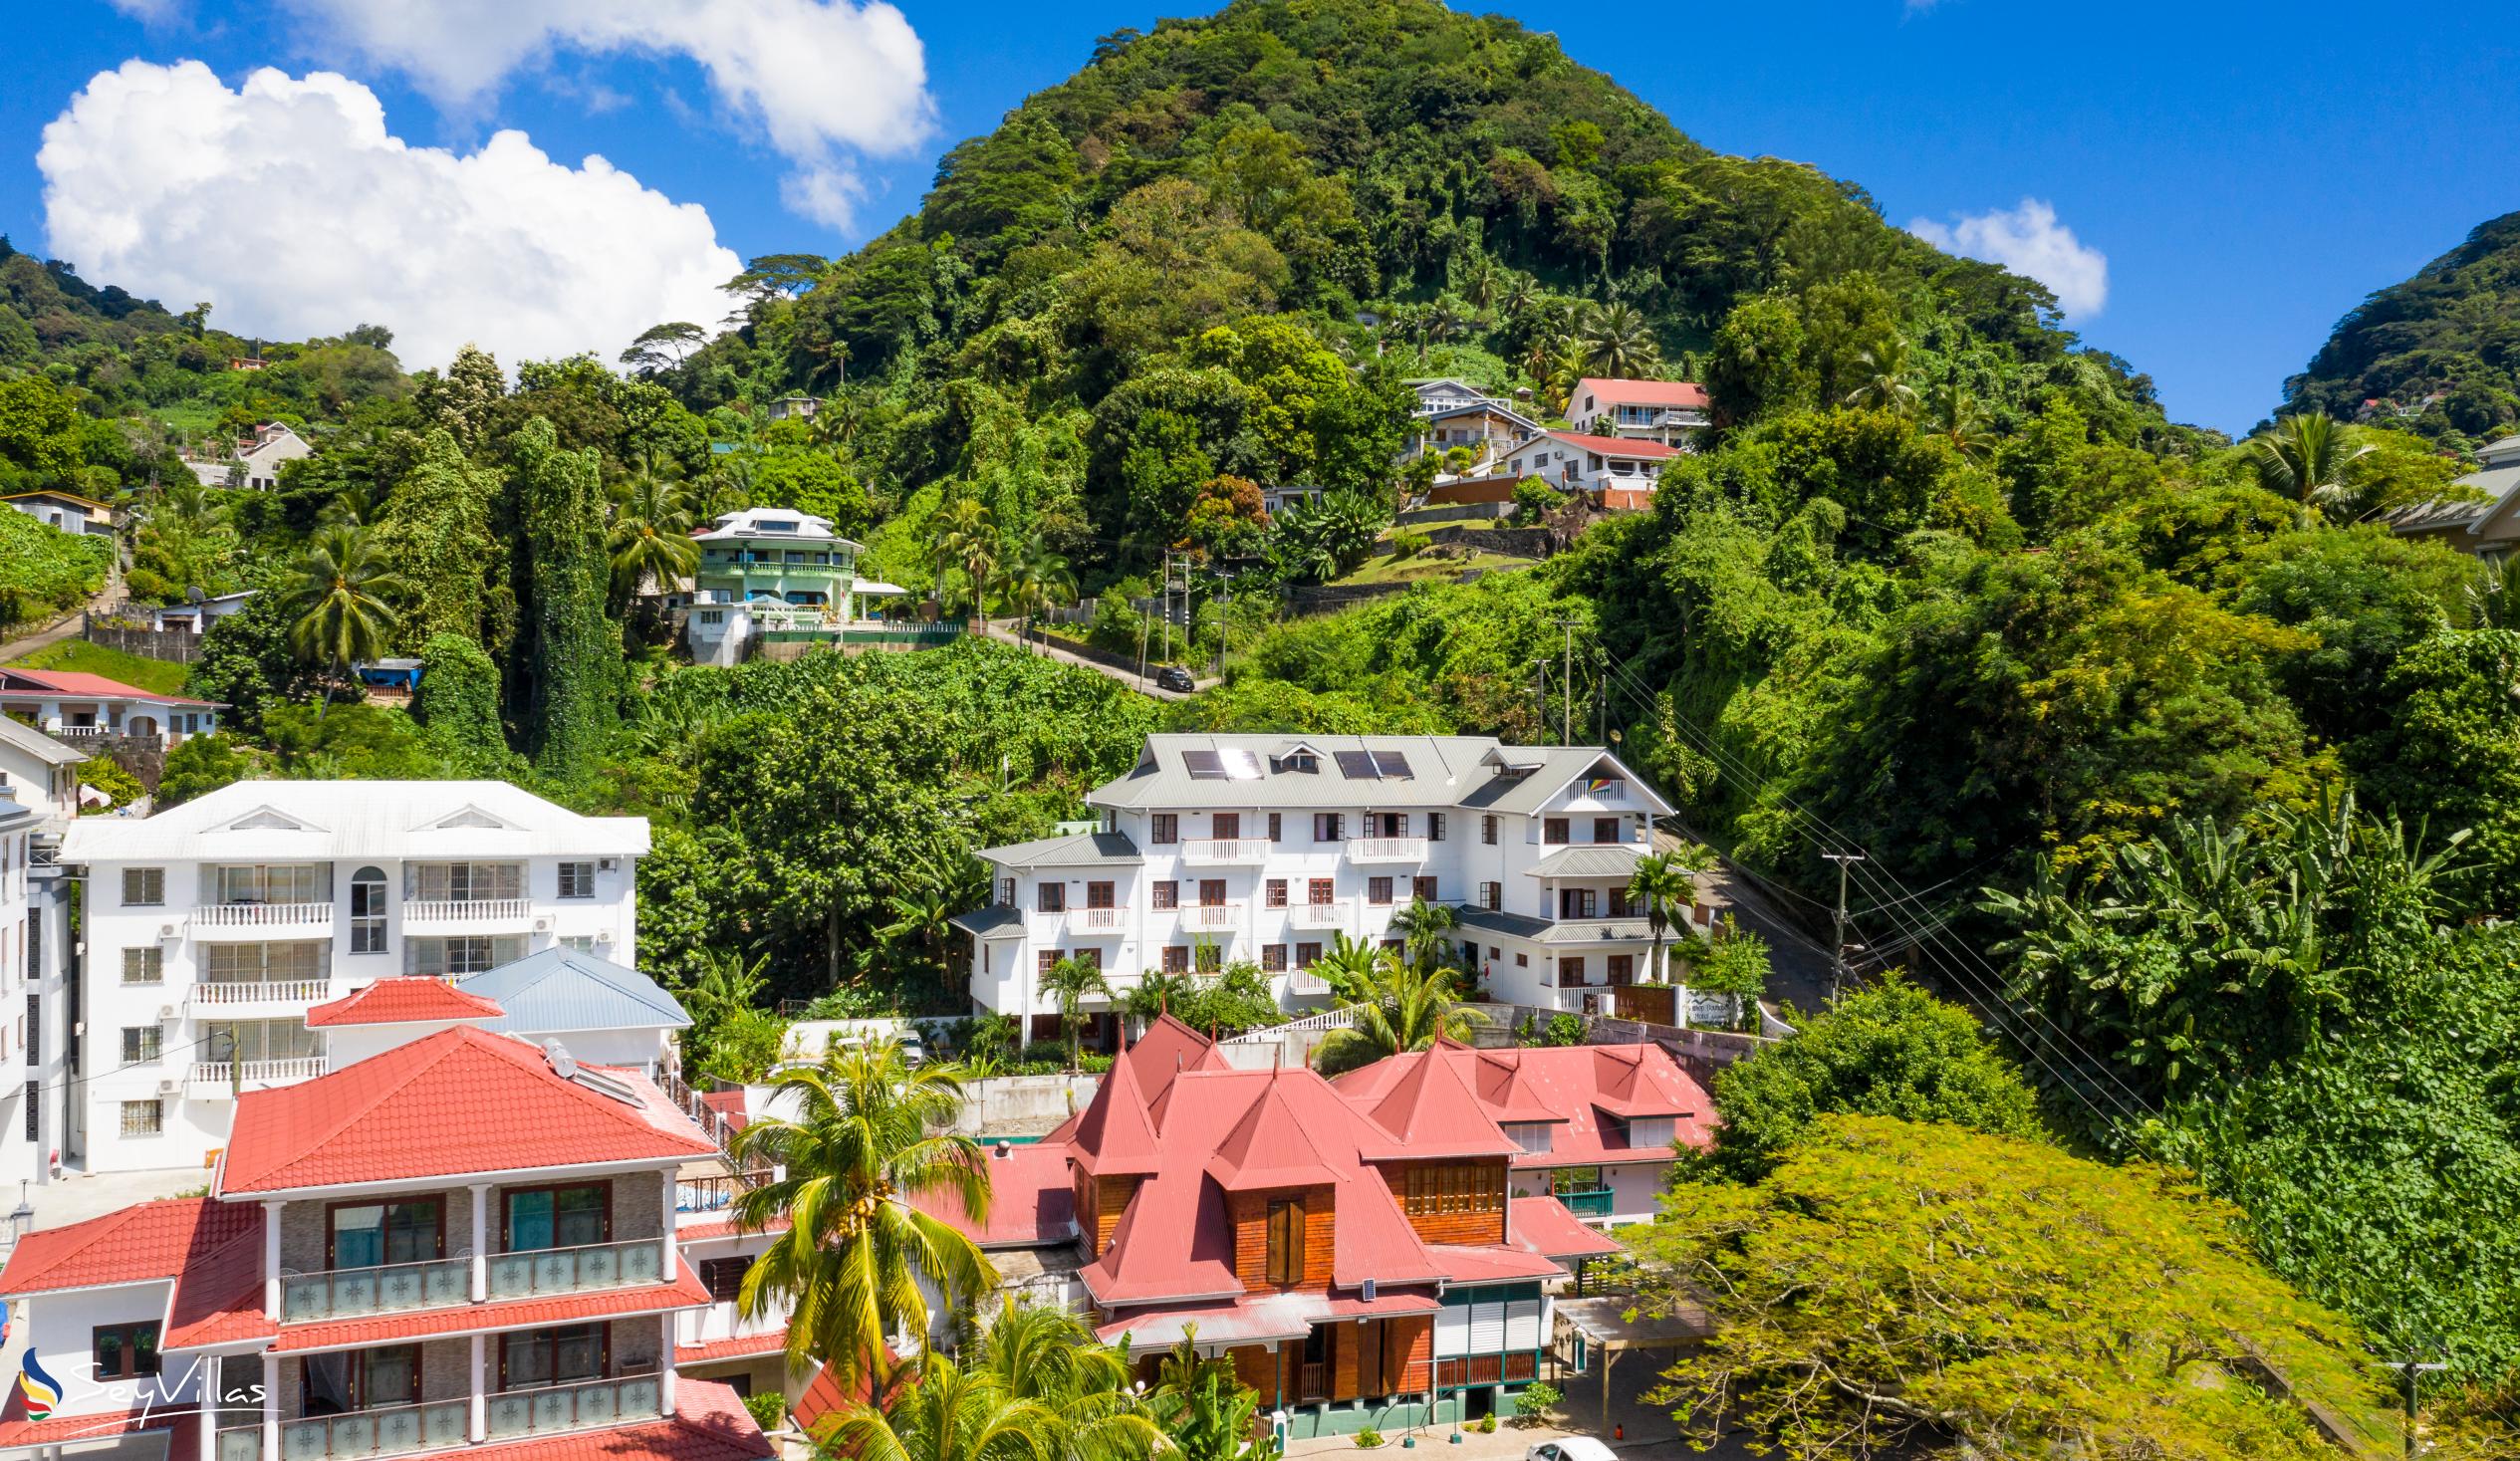 Foto 21: Hilltop Boutique Hotel - Location - Mahé (Seychelles)